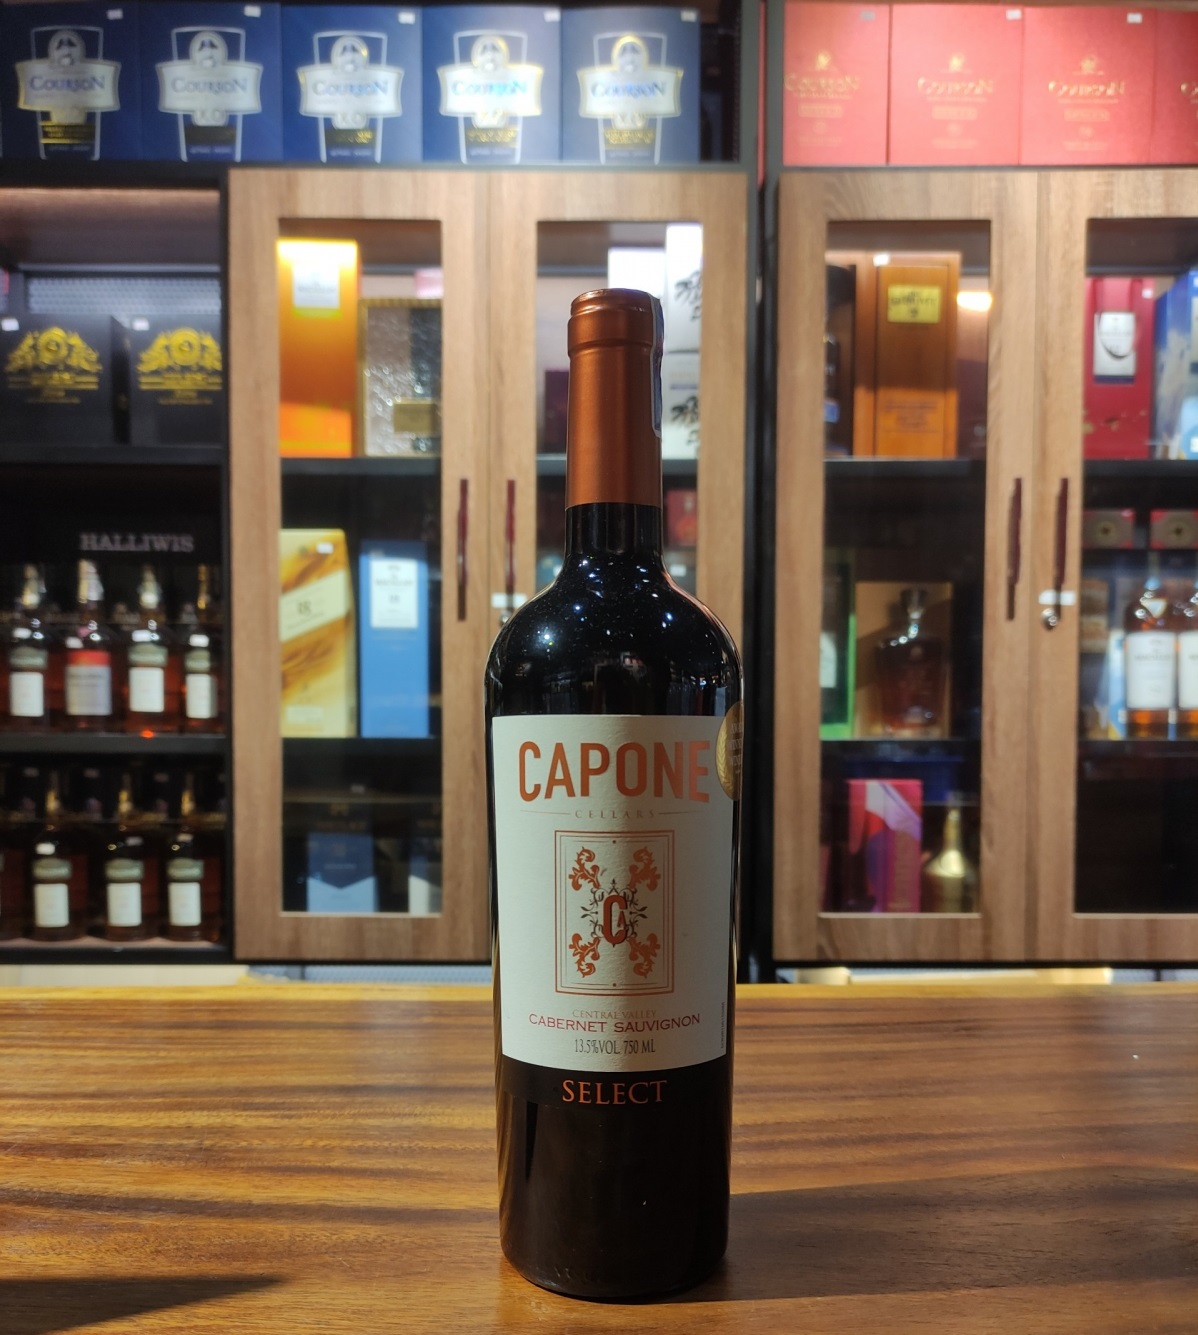 Rượu Vang Chile Capone Selected Cabernet Sauvignon là một loại rượu đáng để thưởng thức. Hãy thưởng thức cùng các món ăn chế biến từ thịt đỏ